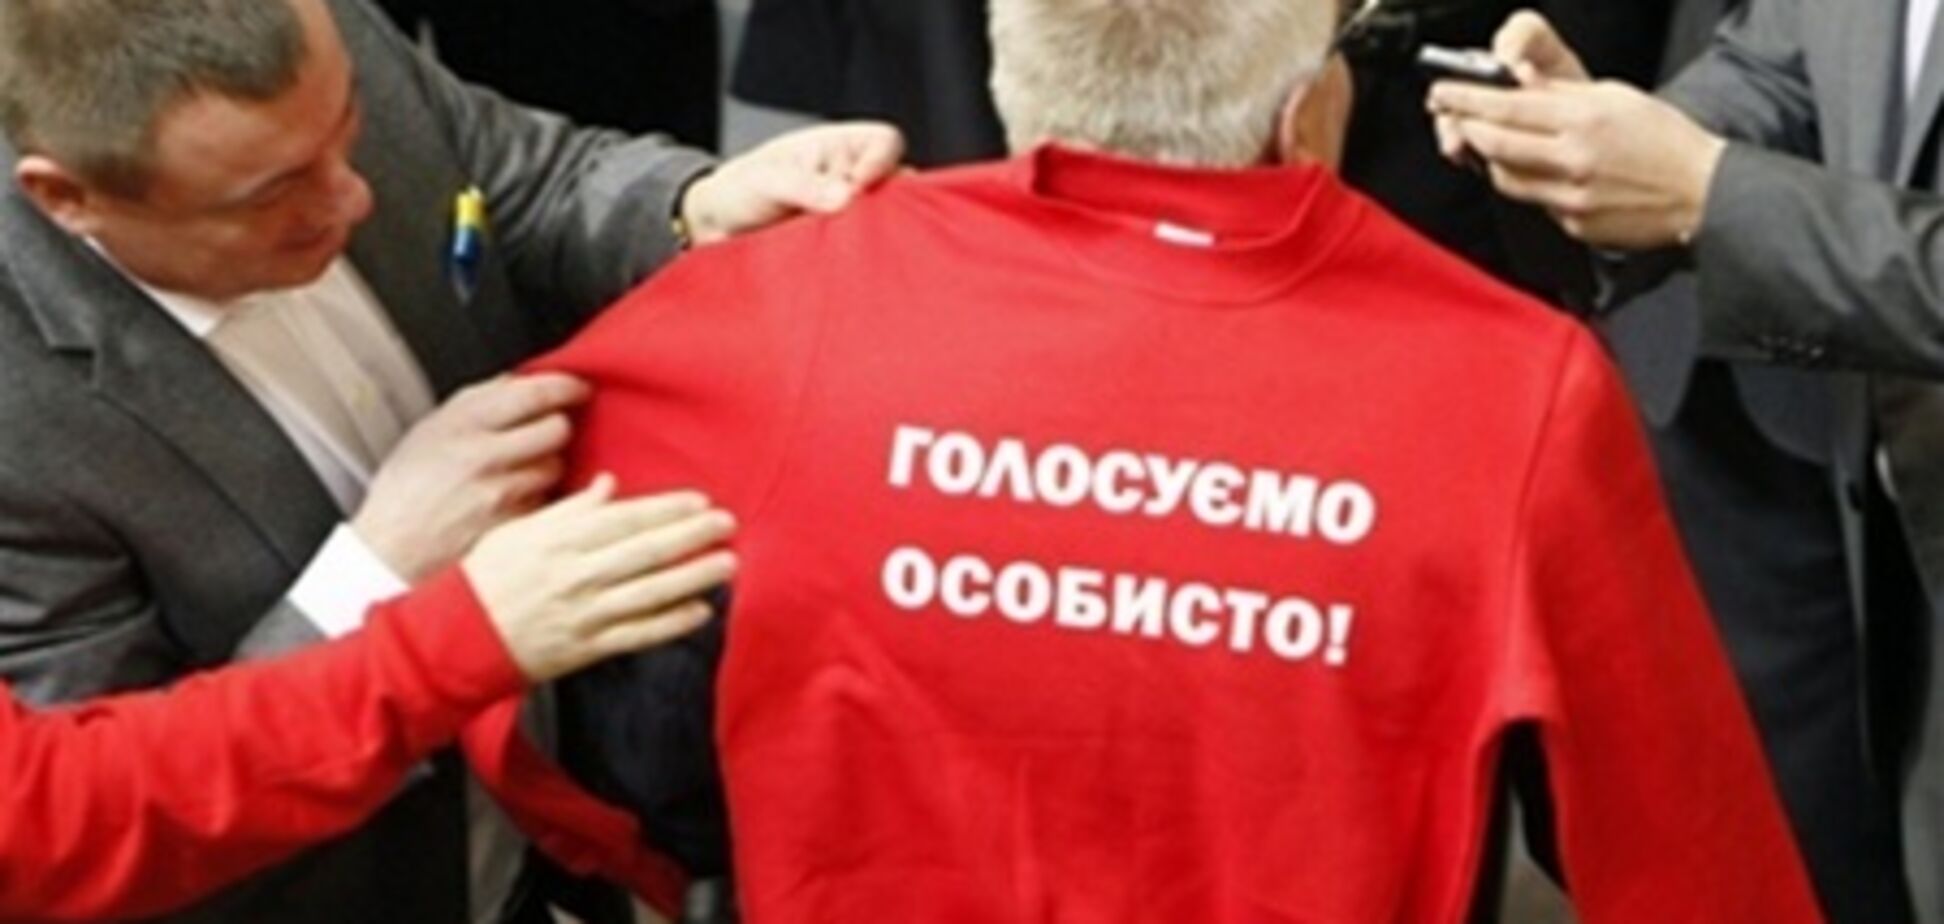 Чечетов о футболке: УДАР развел 'Батьківщину', как котят. Видео